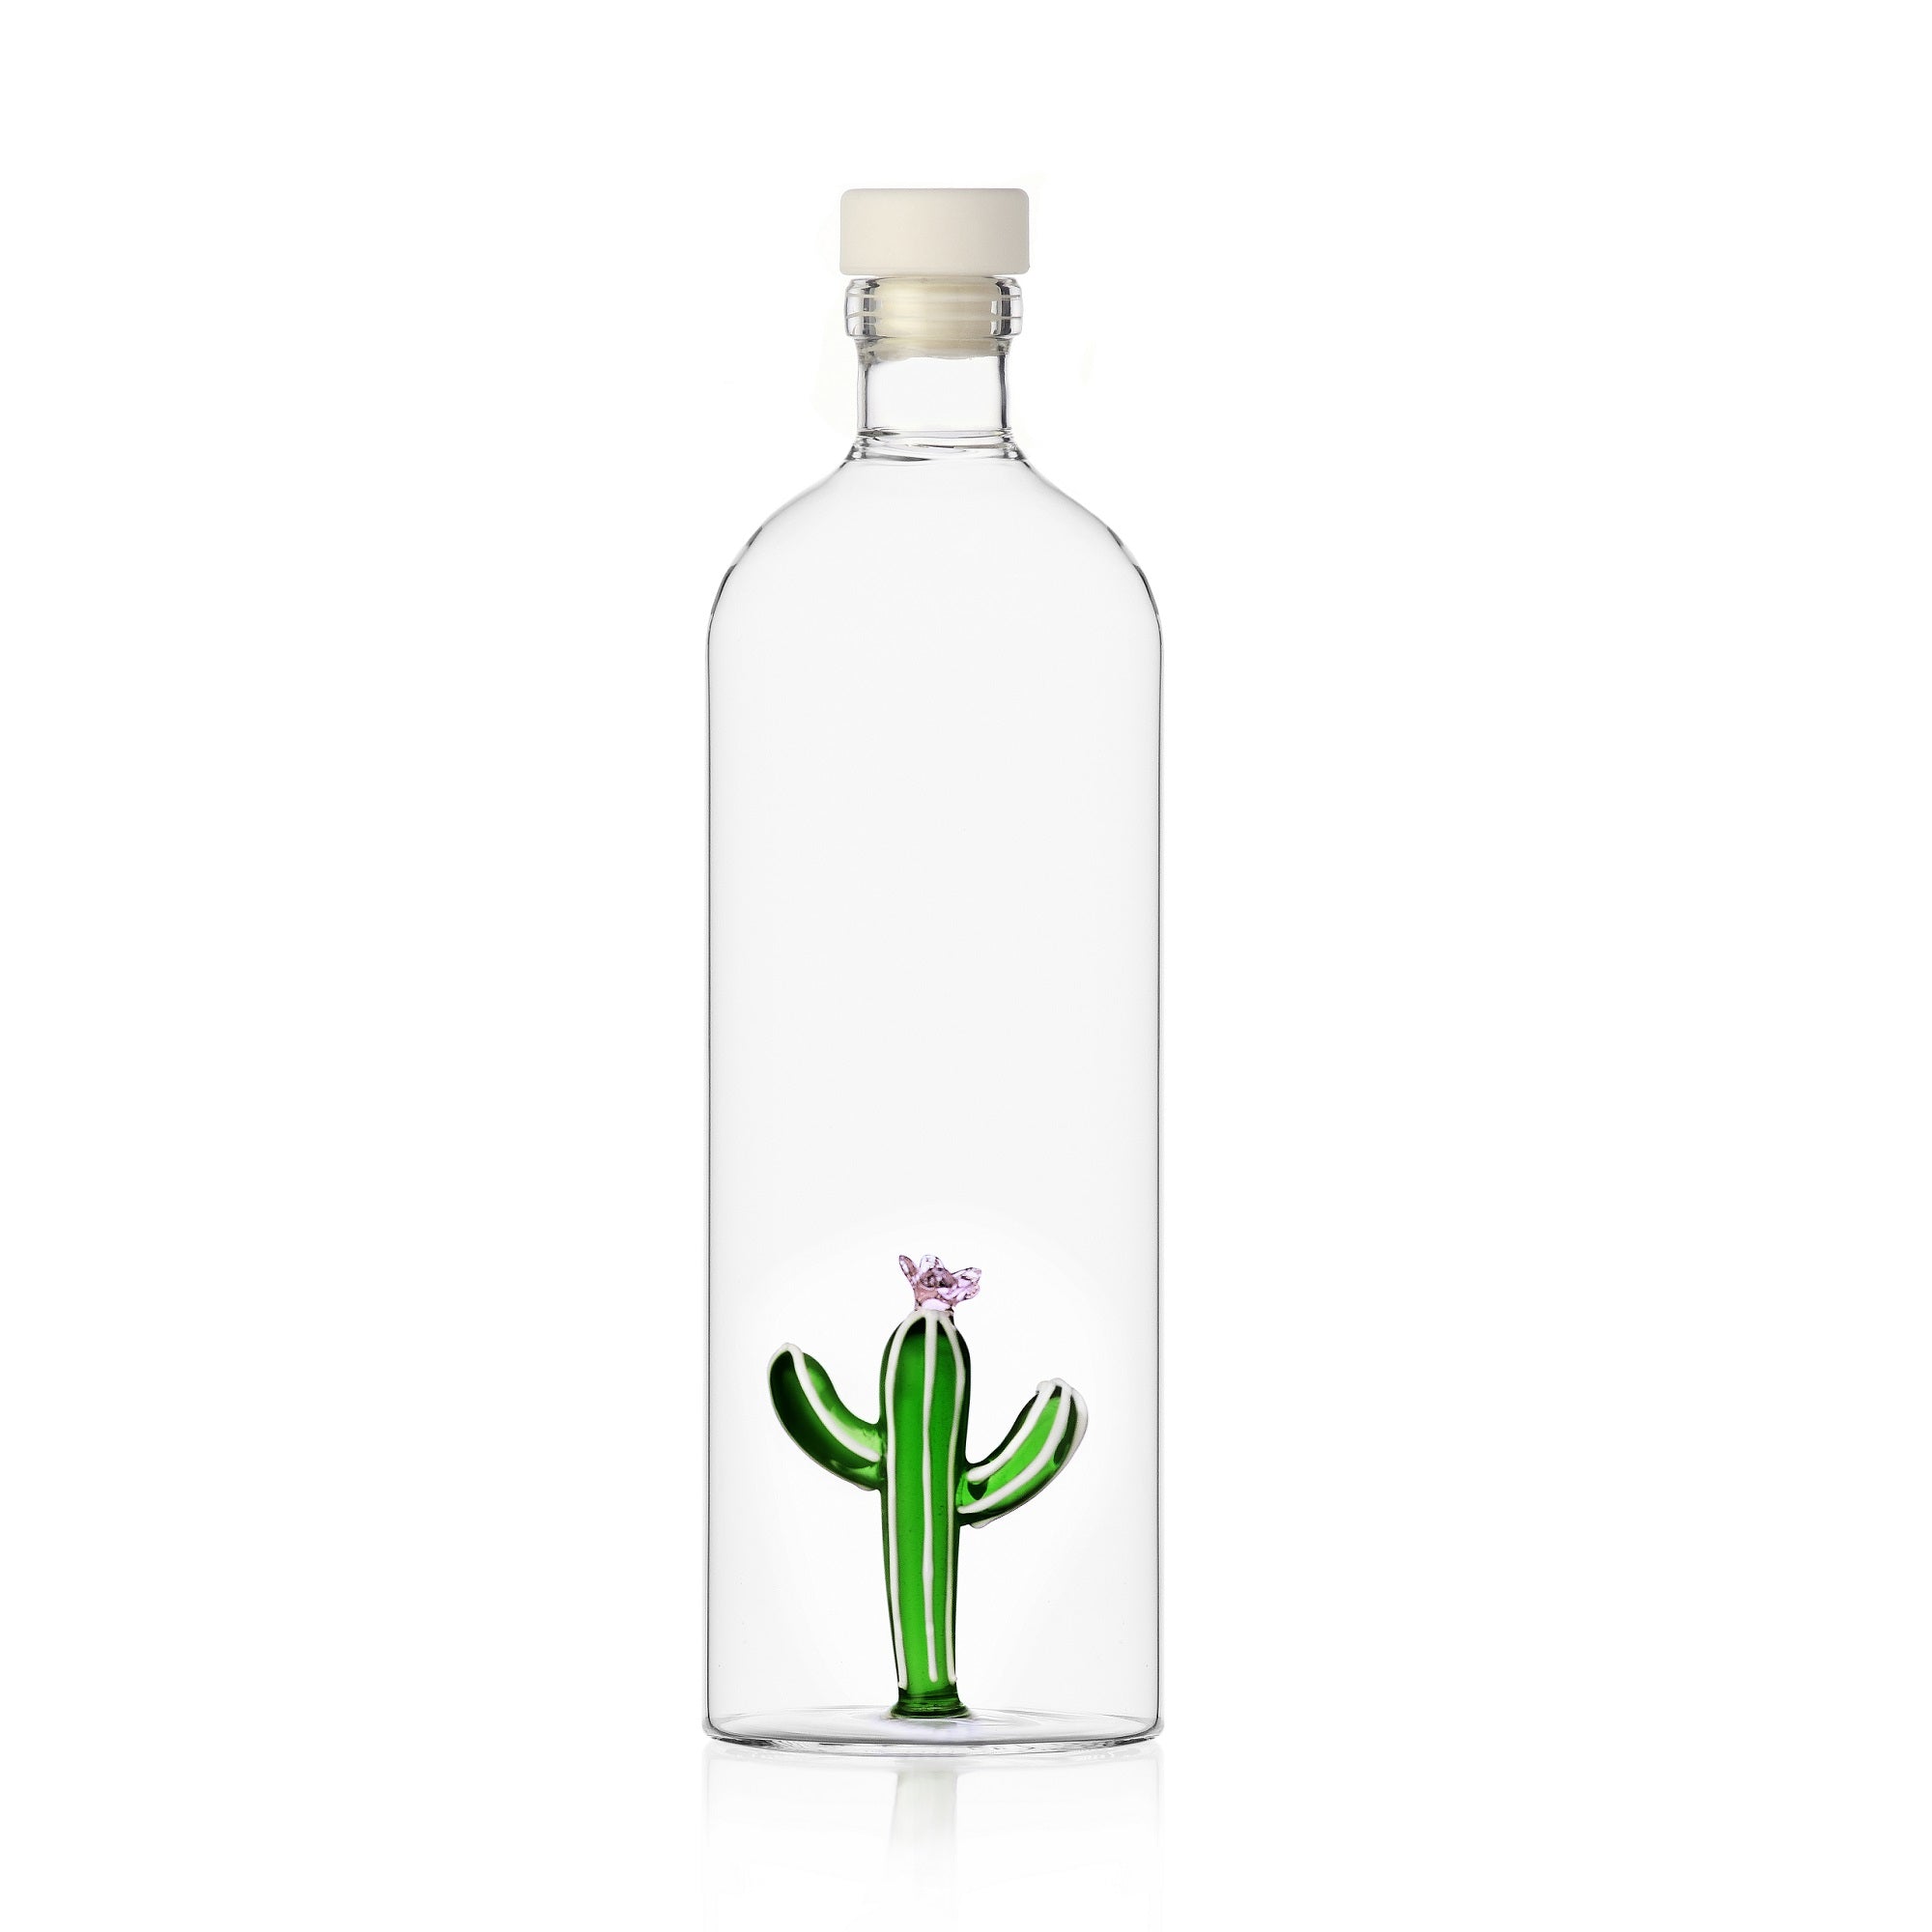 Ichendorf Wüstenpflanzenflasche mit Kaktus